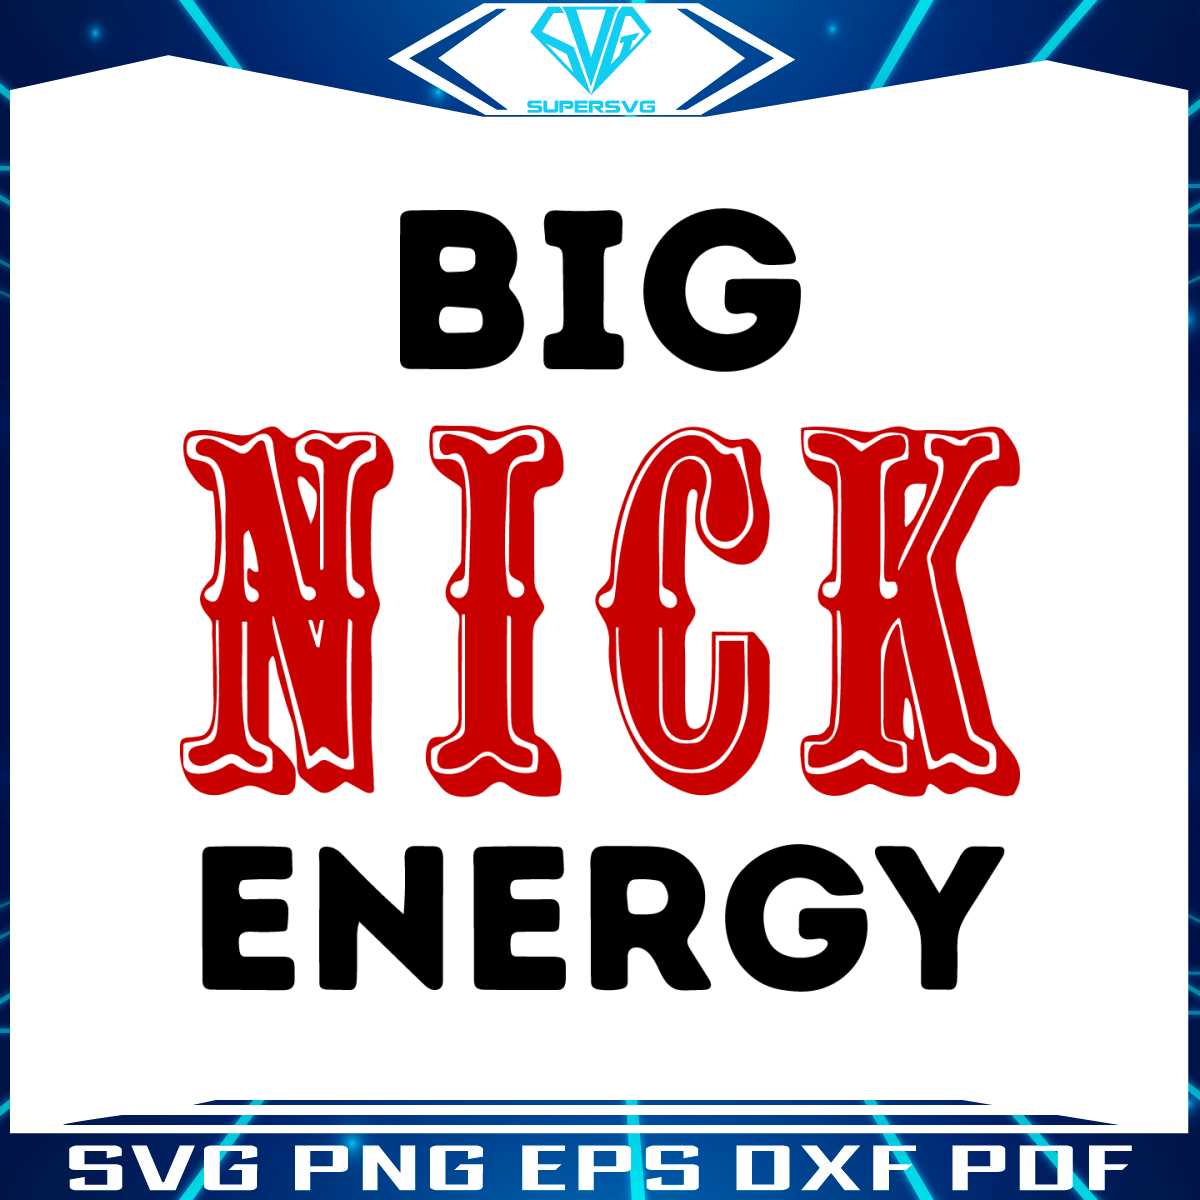 retro-big-nick-energy-49ers-svg